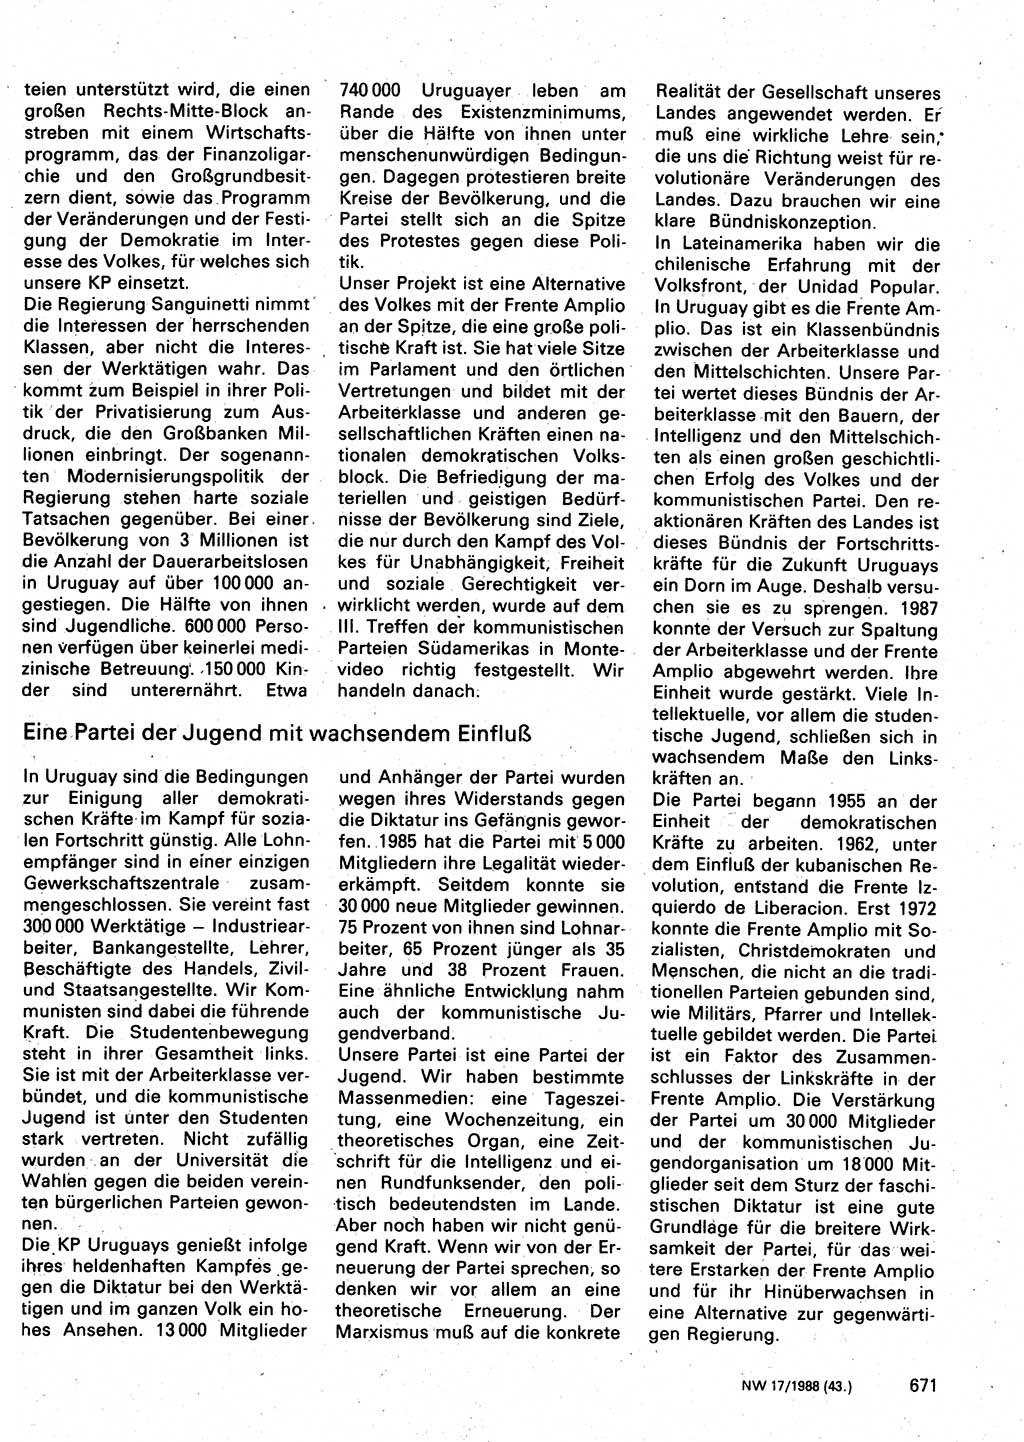 Neuer Weg (NW), Organ des Zentralkomitees (ZK) der SED (Sozialistische Einheitspartei Deutschlands) für Fragen des Parteilebens, 43. Jahrgang [Deutsche Demokratische Republik (DDR)] 1988, Seite 671 (NW ZK SED DDR 1988, S. 671)